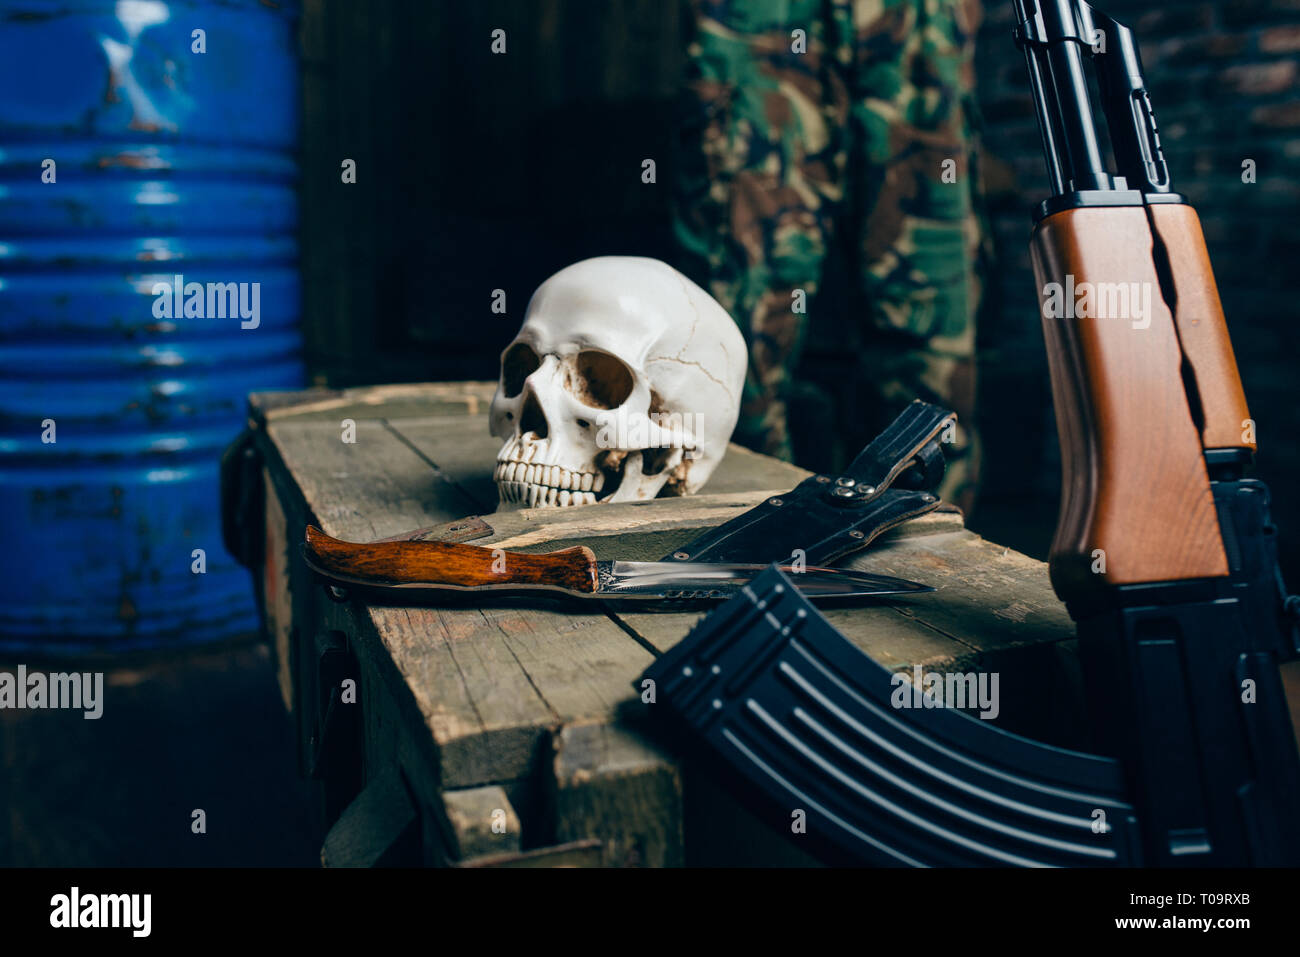 Crâne humain, bombe, couteau et kalachnikov sur fort de munitions, personne. Le terrorisme et la terreur horreur concept Banque D'Images